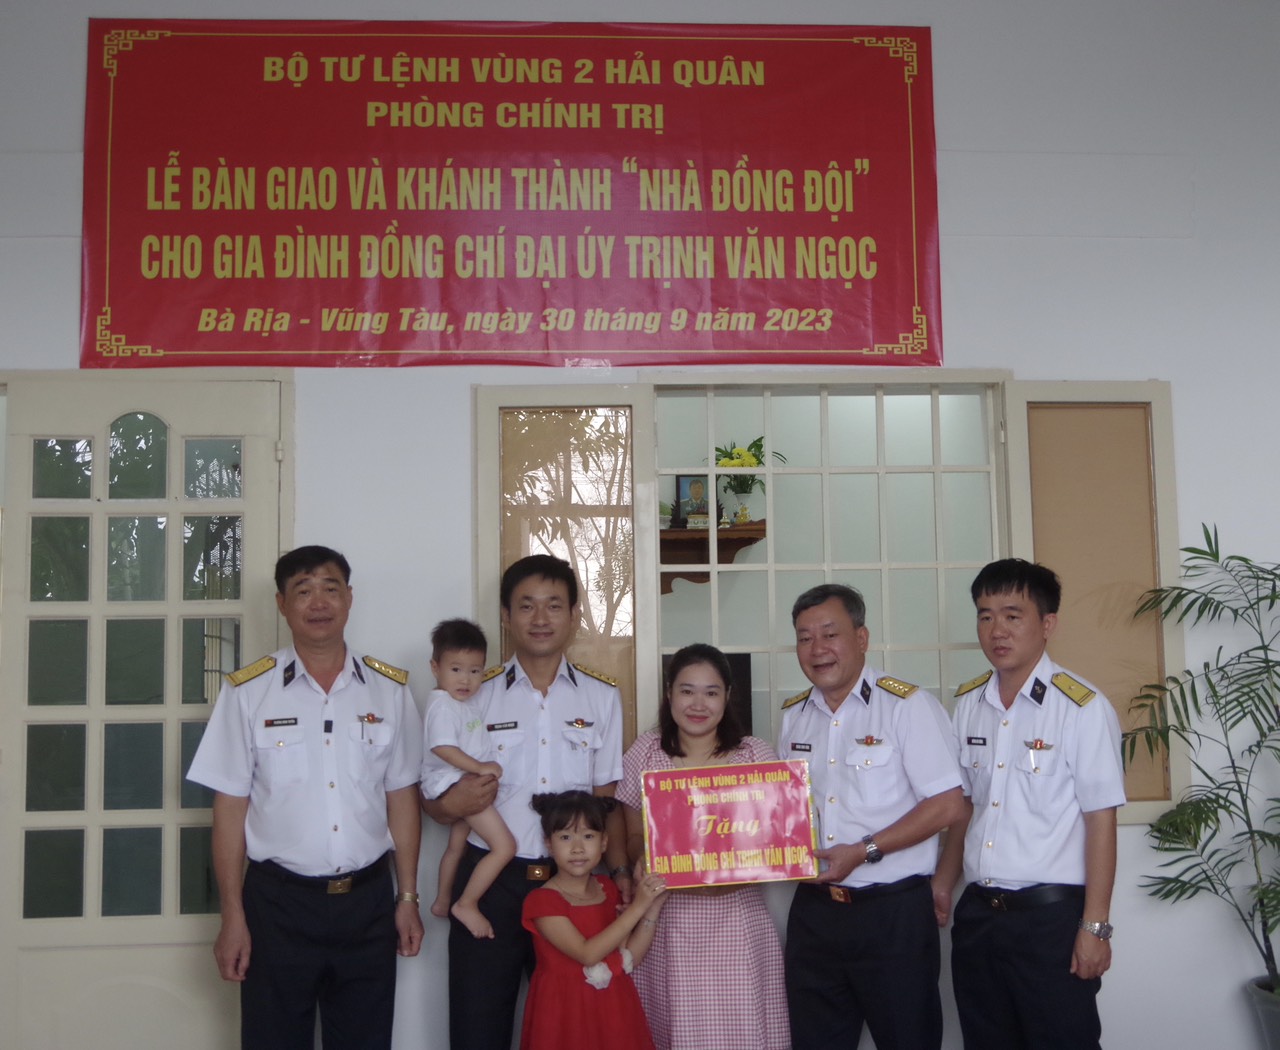 Đại diện Bộ Tư lệnh Vùng 2 Hải quân tặng quà cho gia đình Đại úy Trịnh Văn Ngọc.